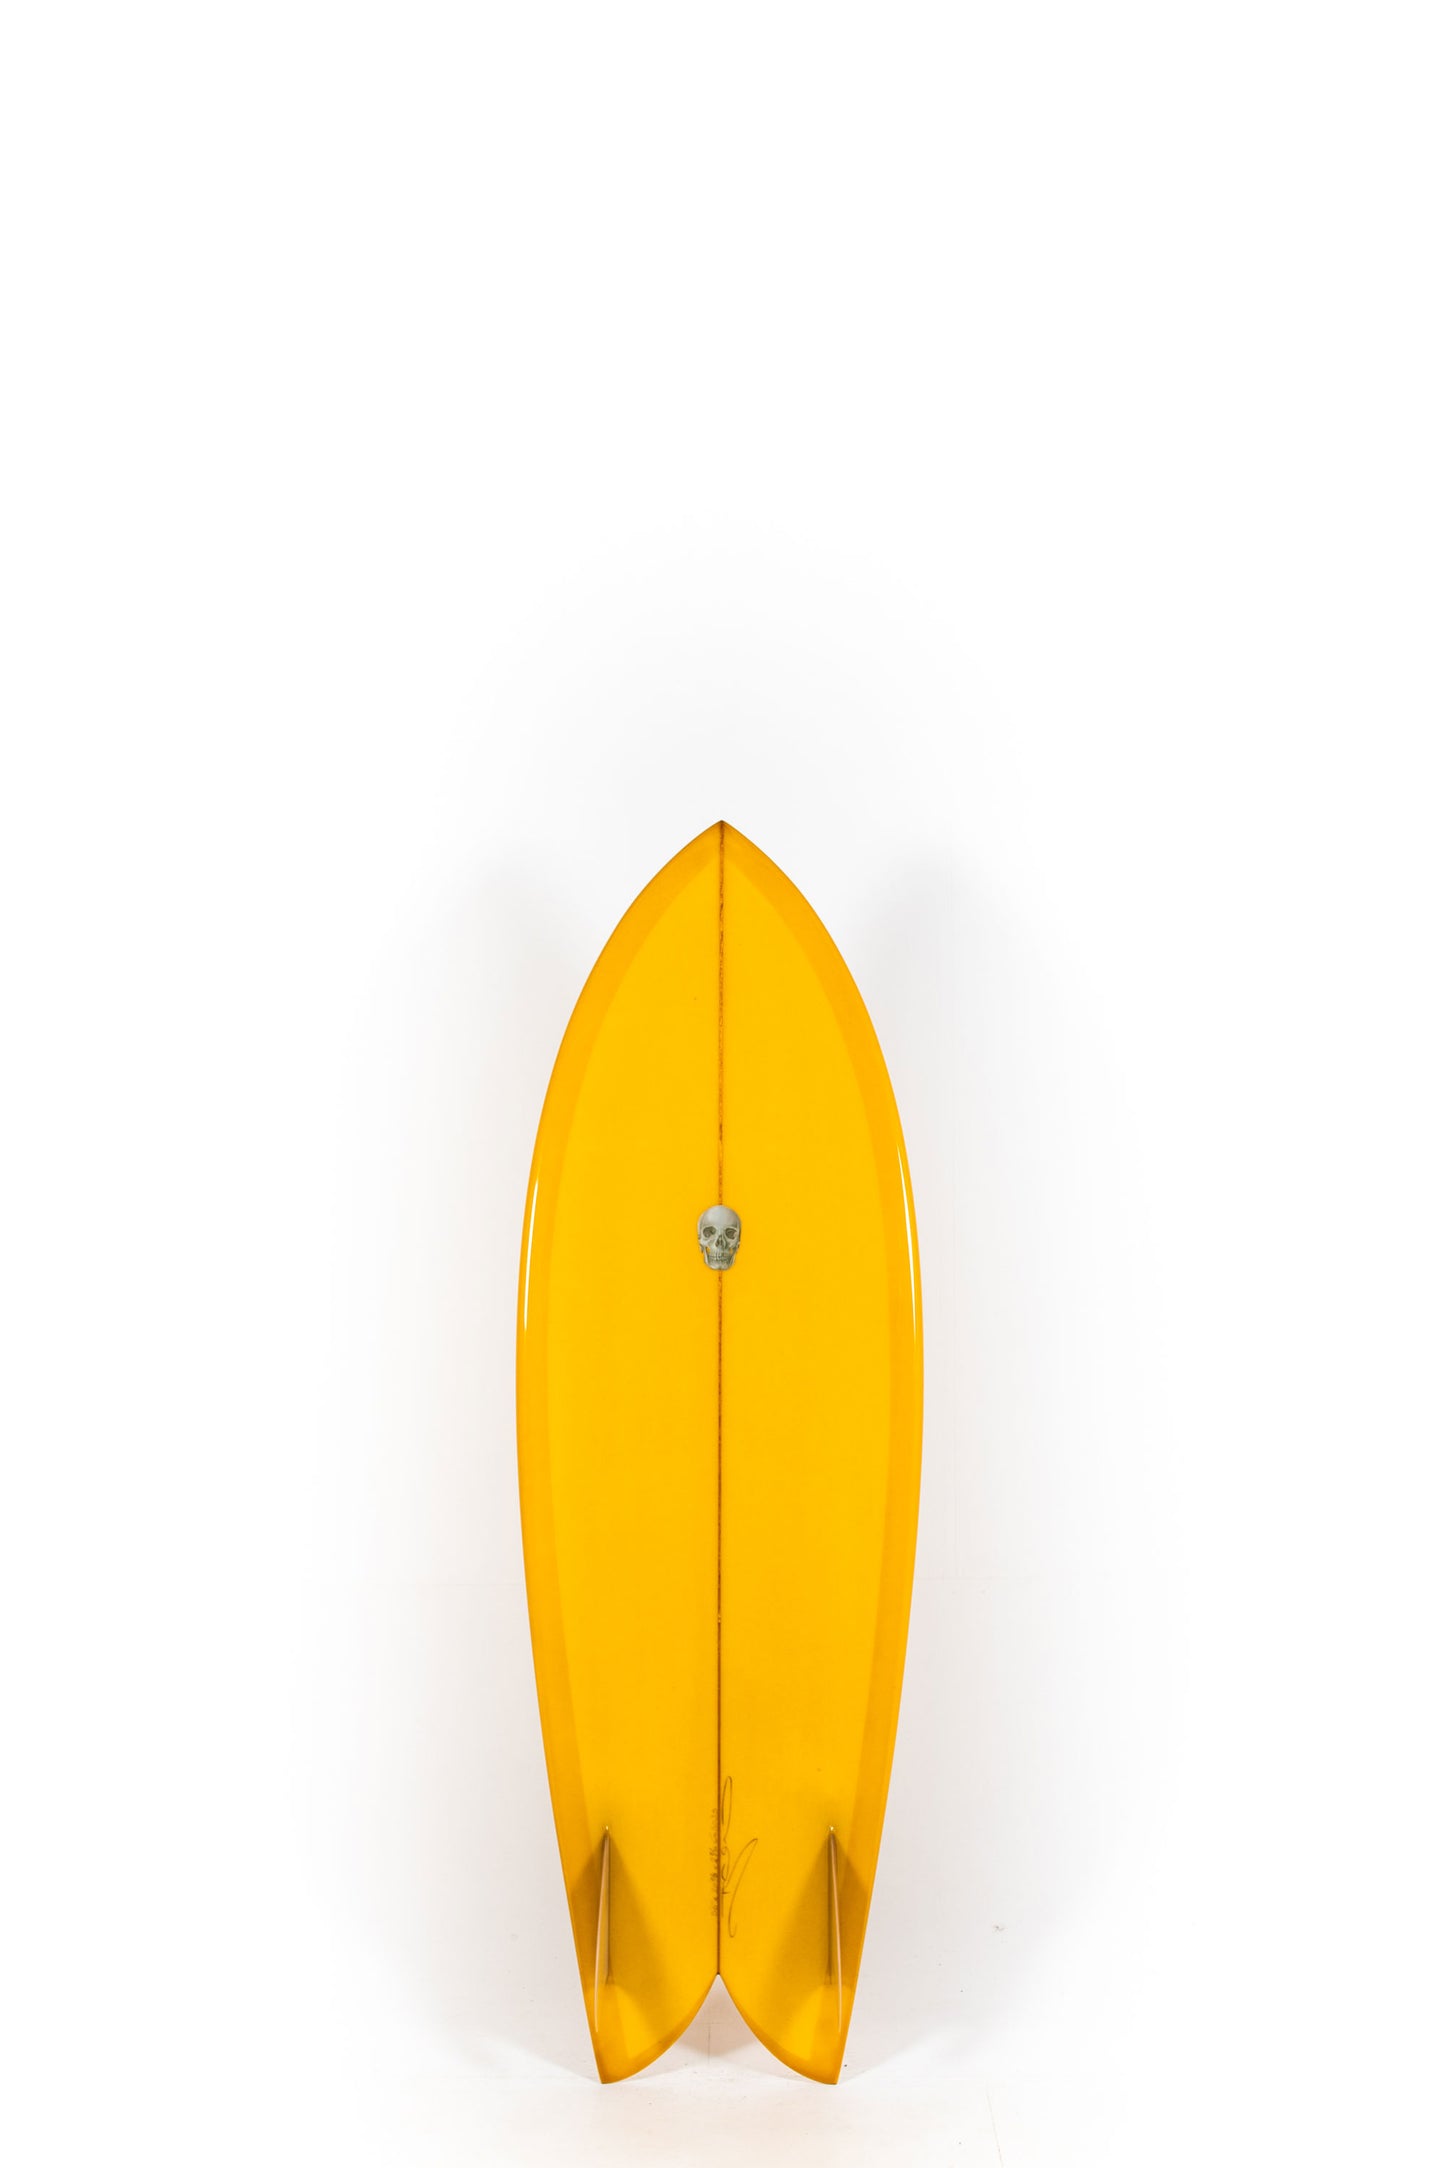 Pukas Surf Shop - Christenson Surfboards - CHRIS FISH - 5'6" x 20 7/8 x 2 7/16 - CX05033